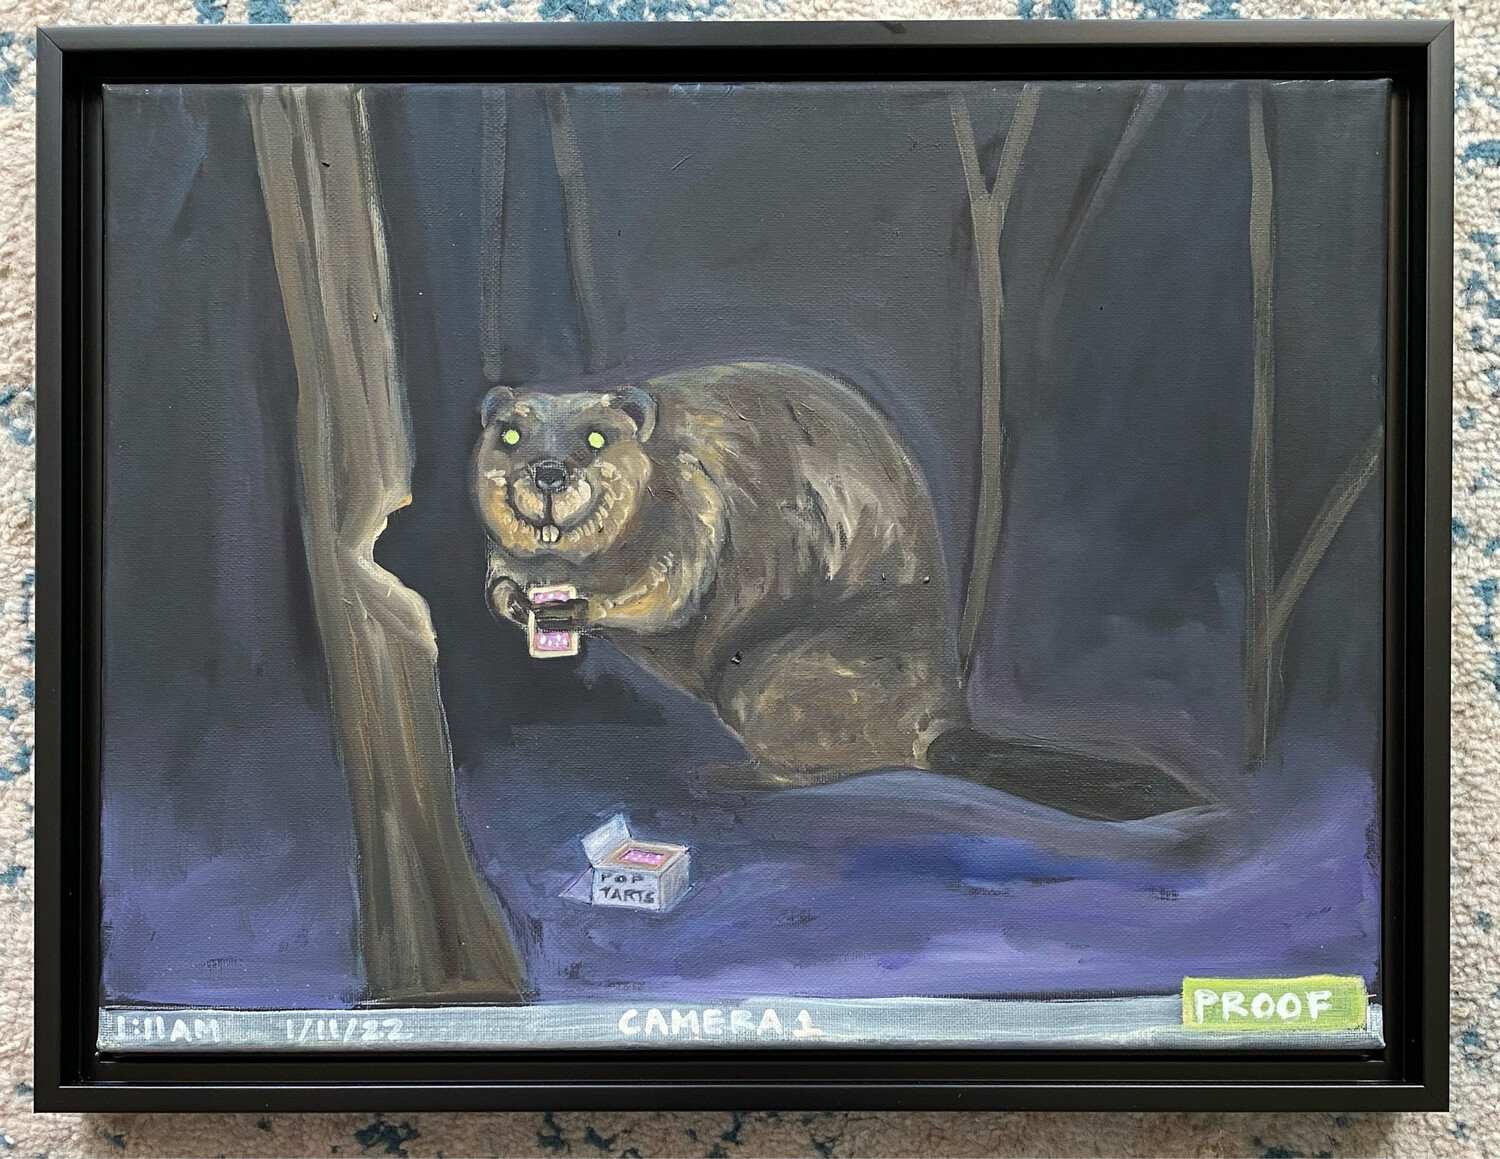 Critter Cam: Berry Pop-Tarts 4 Beavers